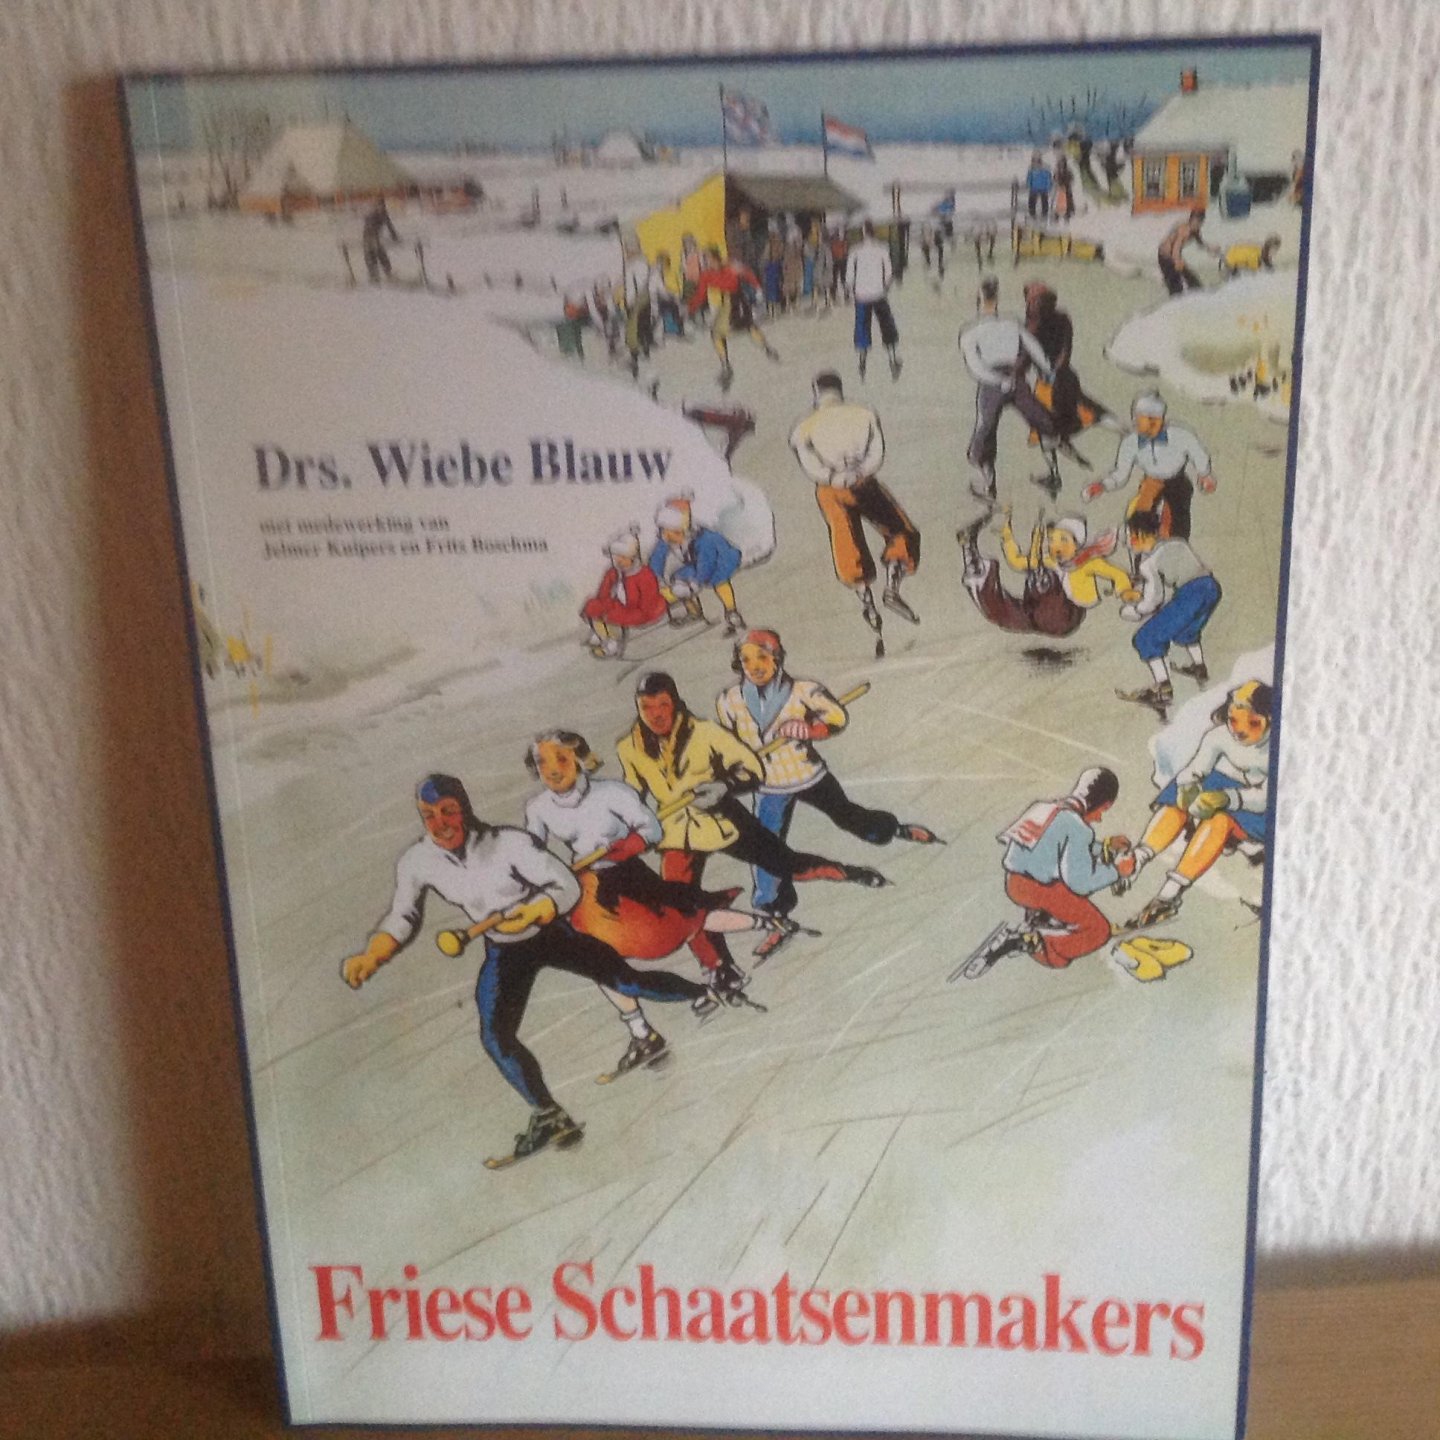 Blauw, W. - Friese schaatsenmakers / druk 1